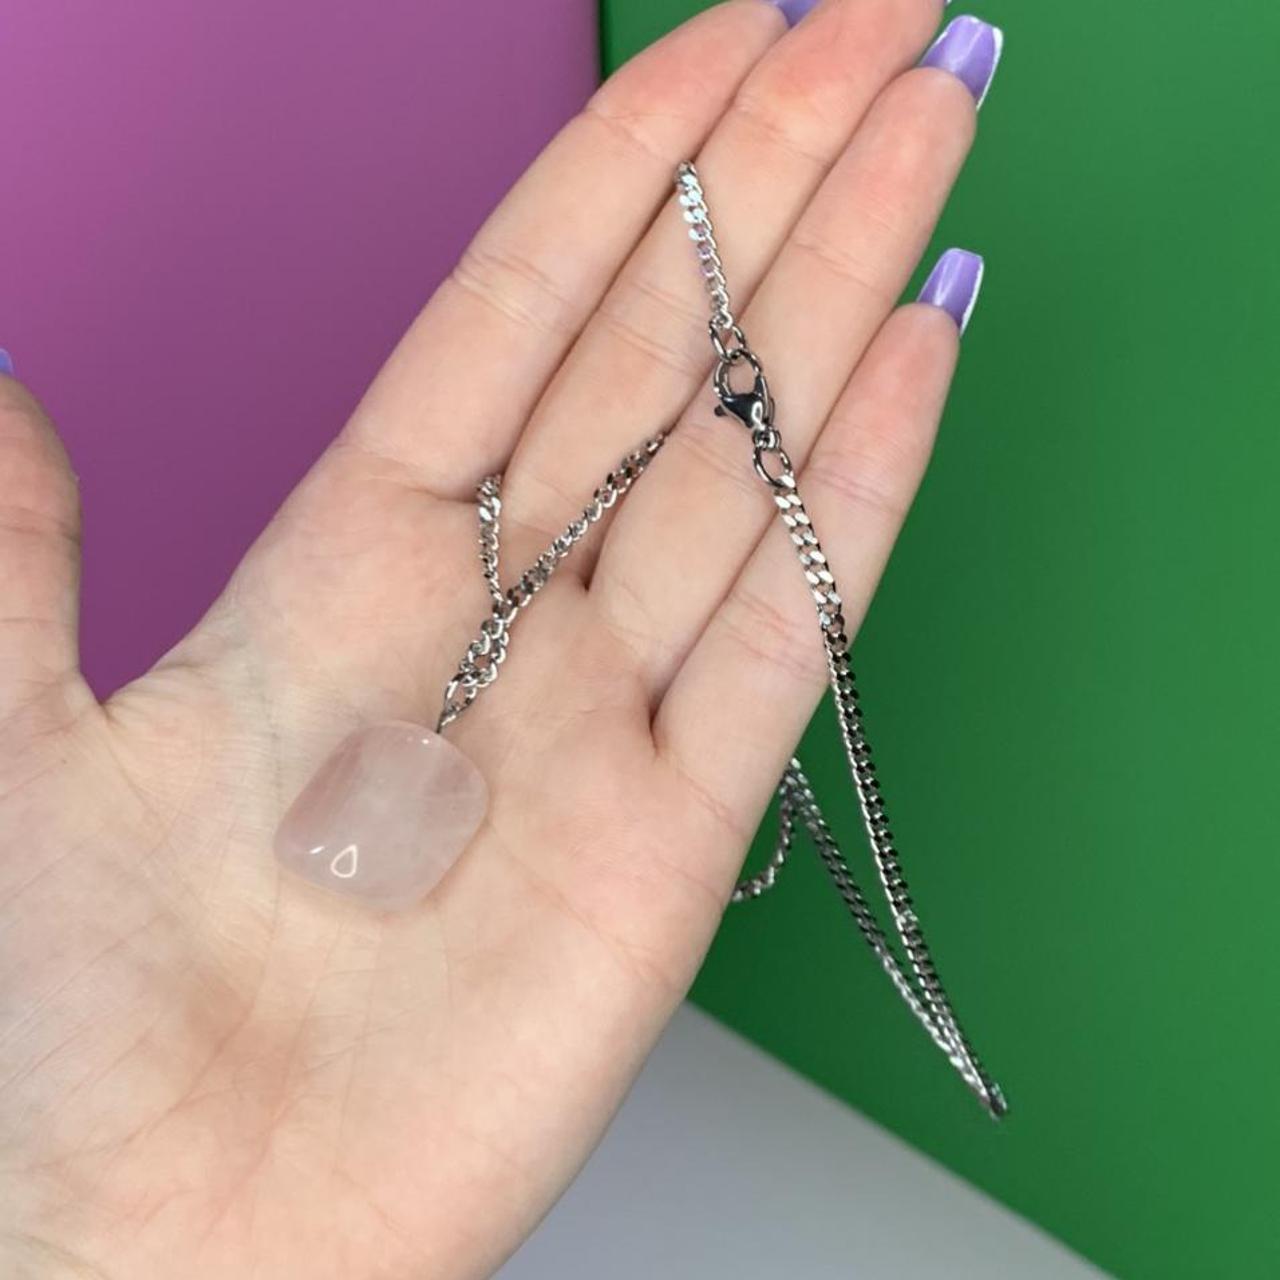 Product Image 2 - Rose quartz tumble necklace 🦋

This